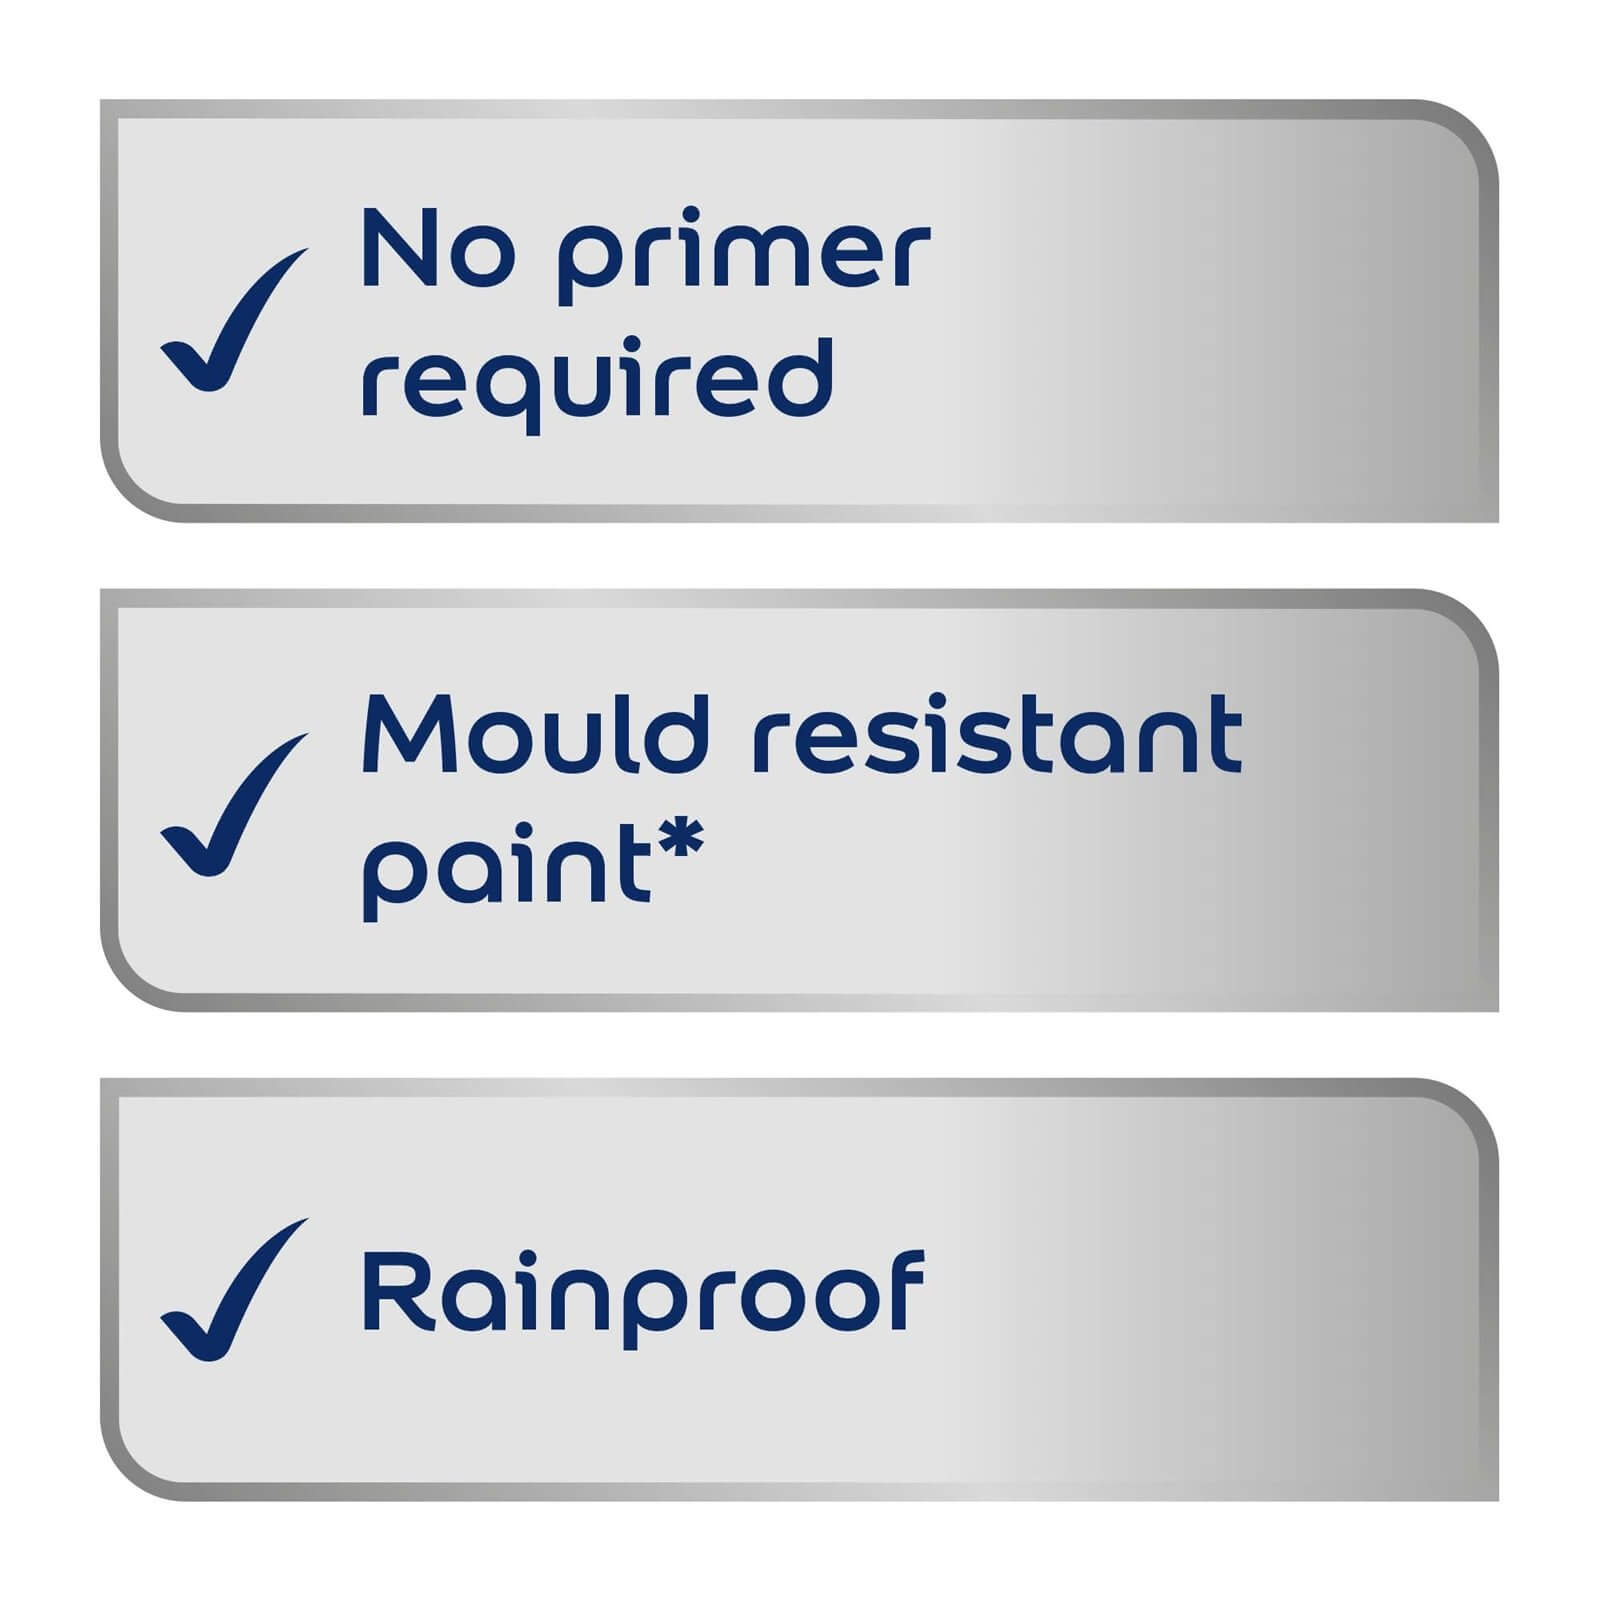 Dulux Weathershield Multi Surface Paint Gallant Grey - 750ml